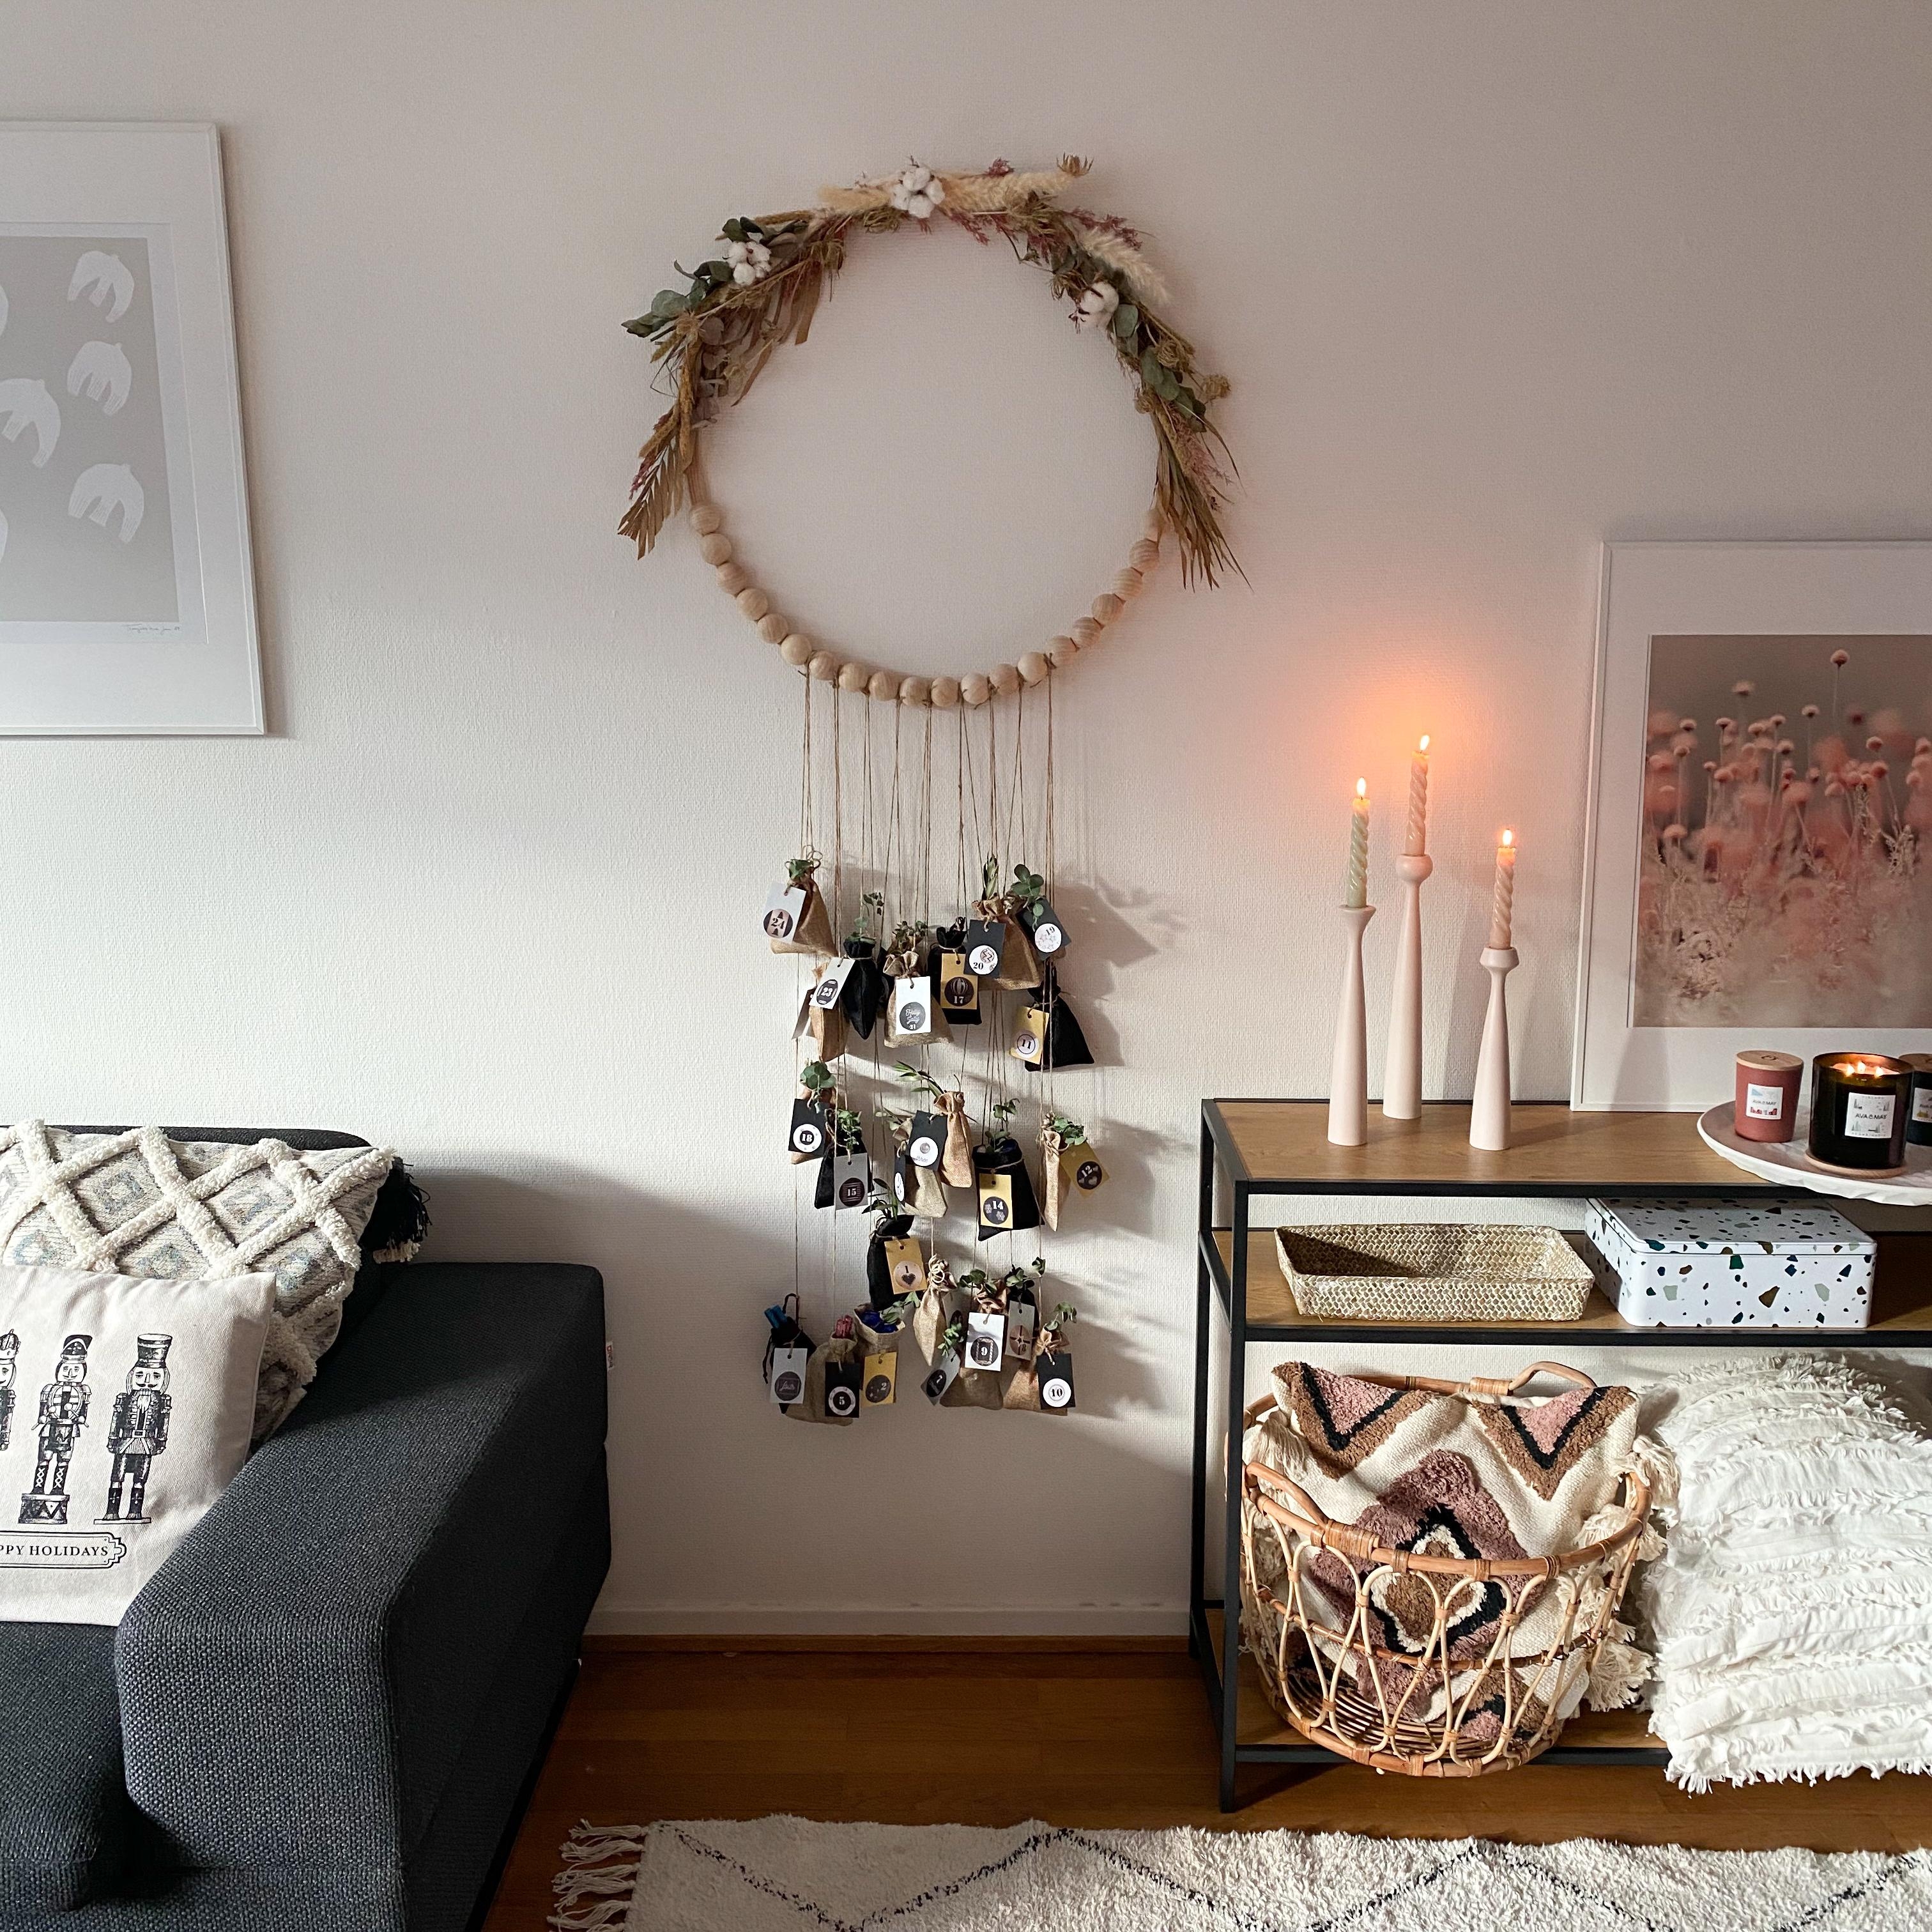 #adventskalender #advent #kranz #diy #bohostyle #cozyhome #hyggehome #livingroom #cozy #diykranz